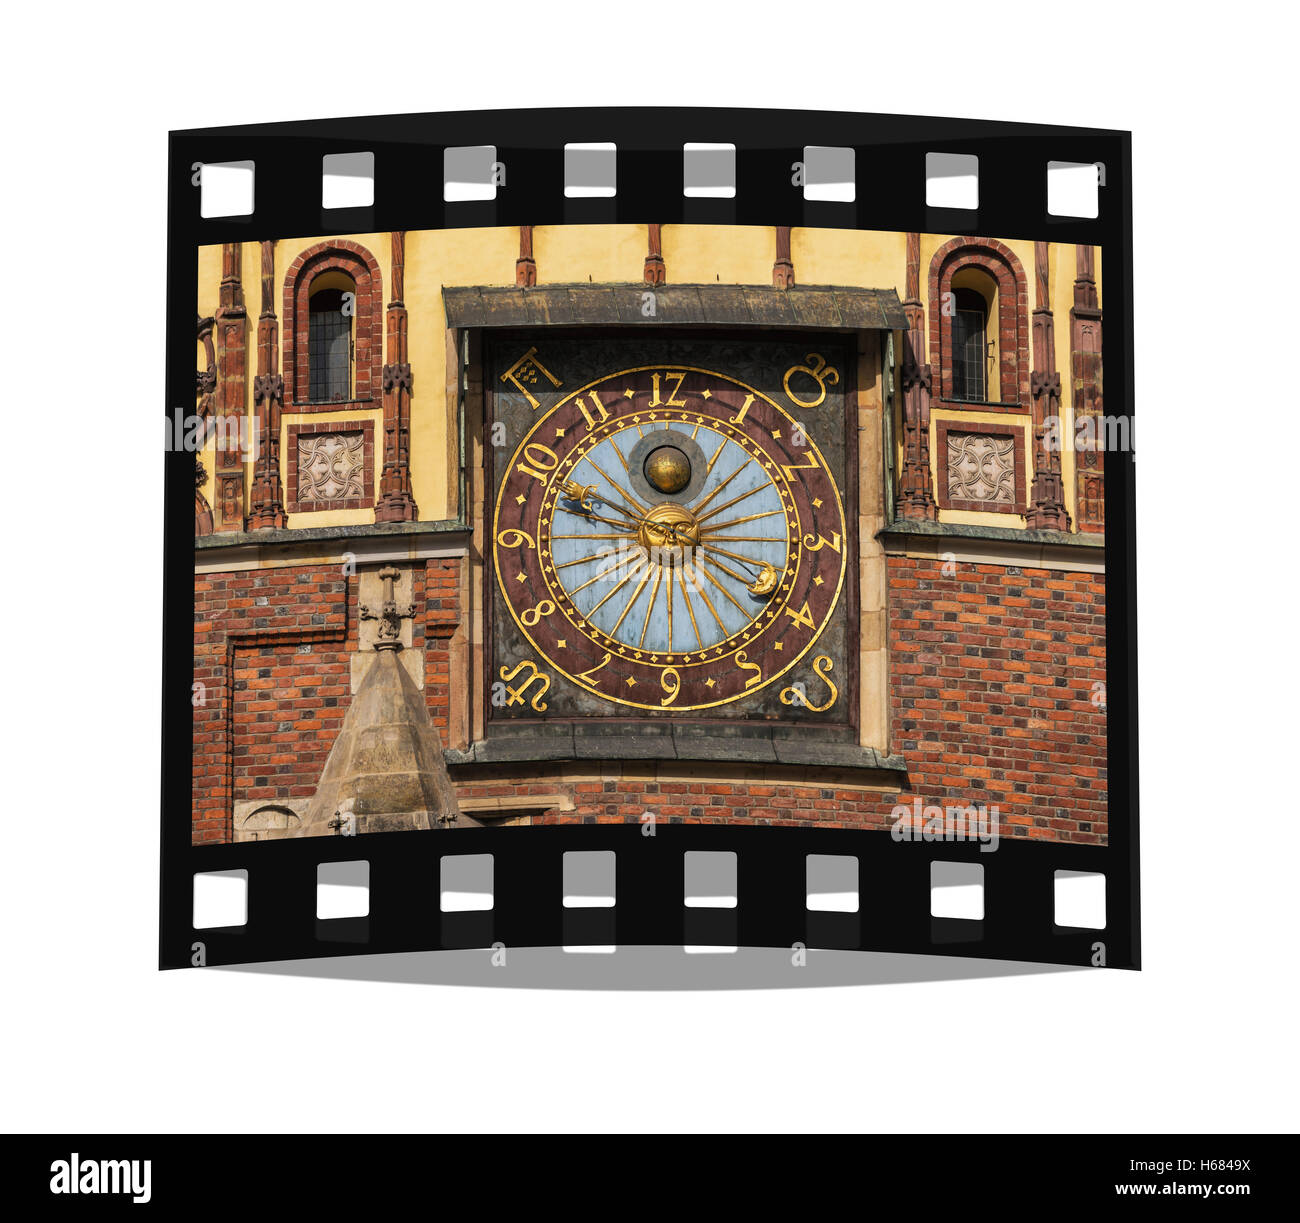 Horloge astronomique sur l'Est de la façade de l'hôtel de ville à partir de l'année 1580, la Basse Silésie, Wroclaw, Pologne, Europe Banque D'Images